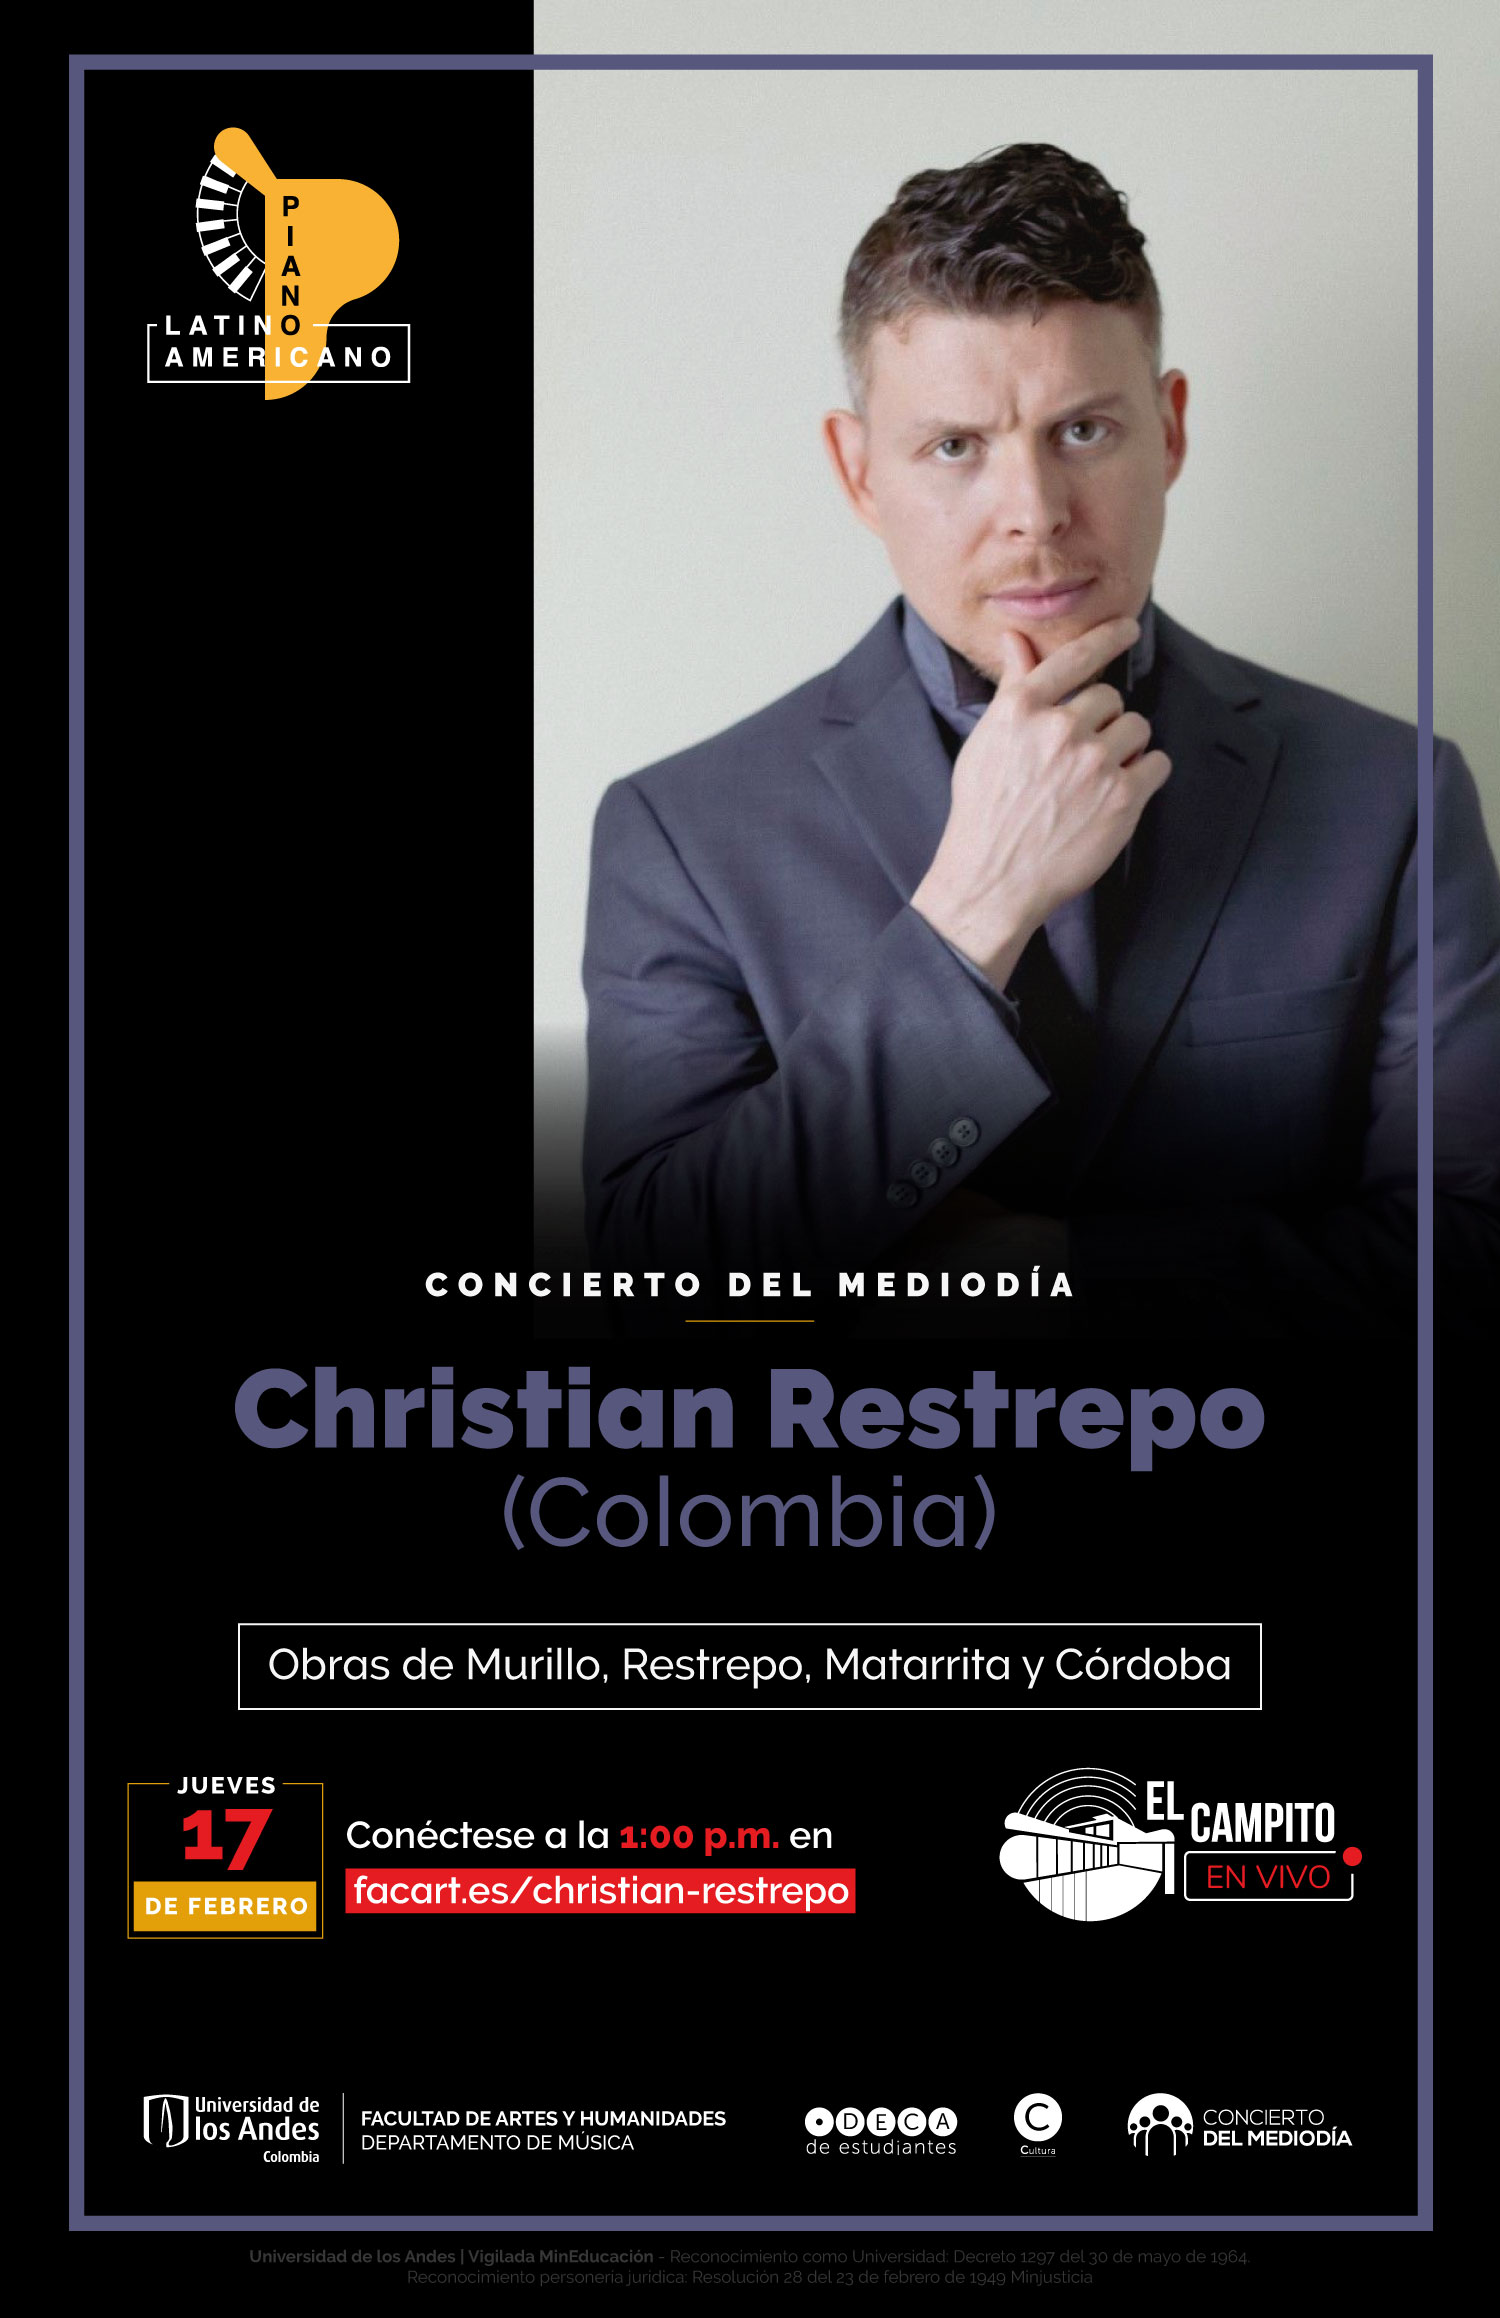 Concierto de Mediodia - Christian Restrepo